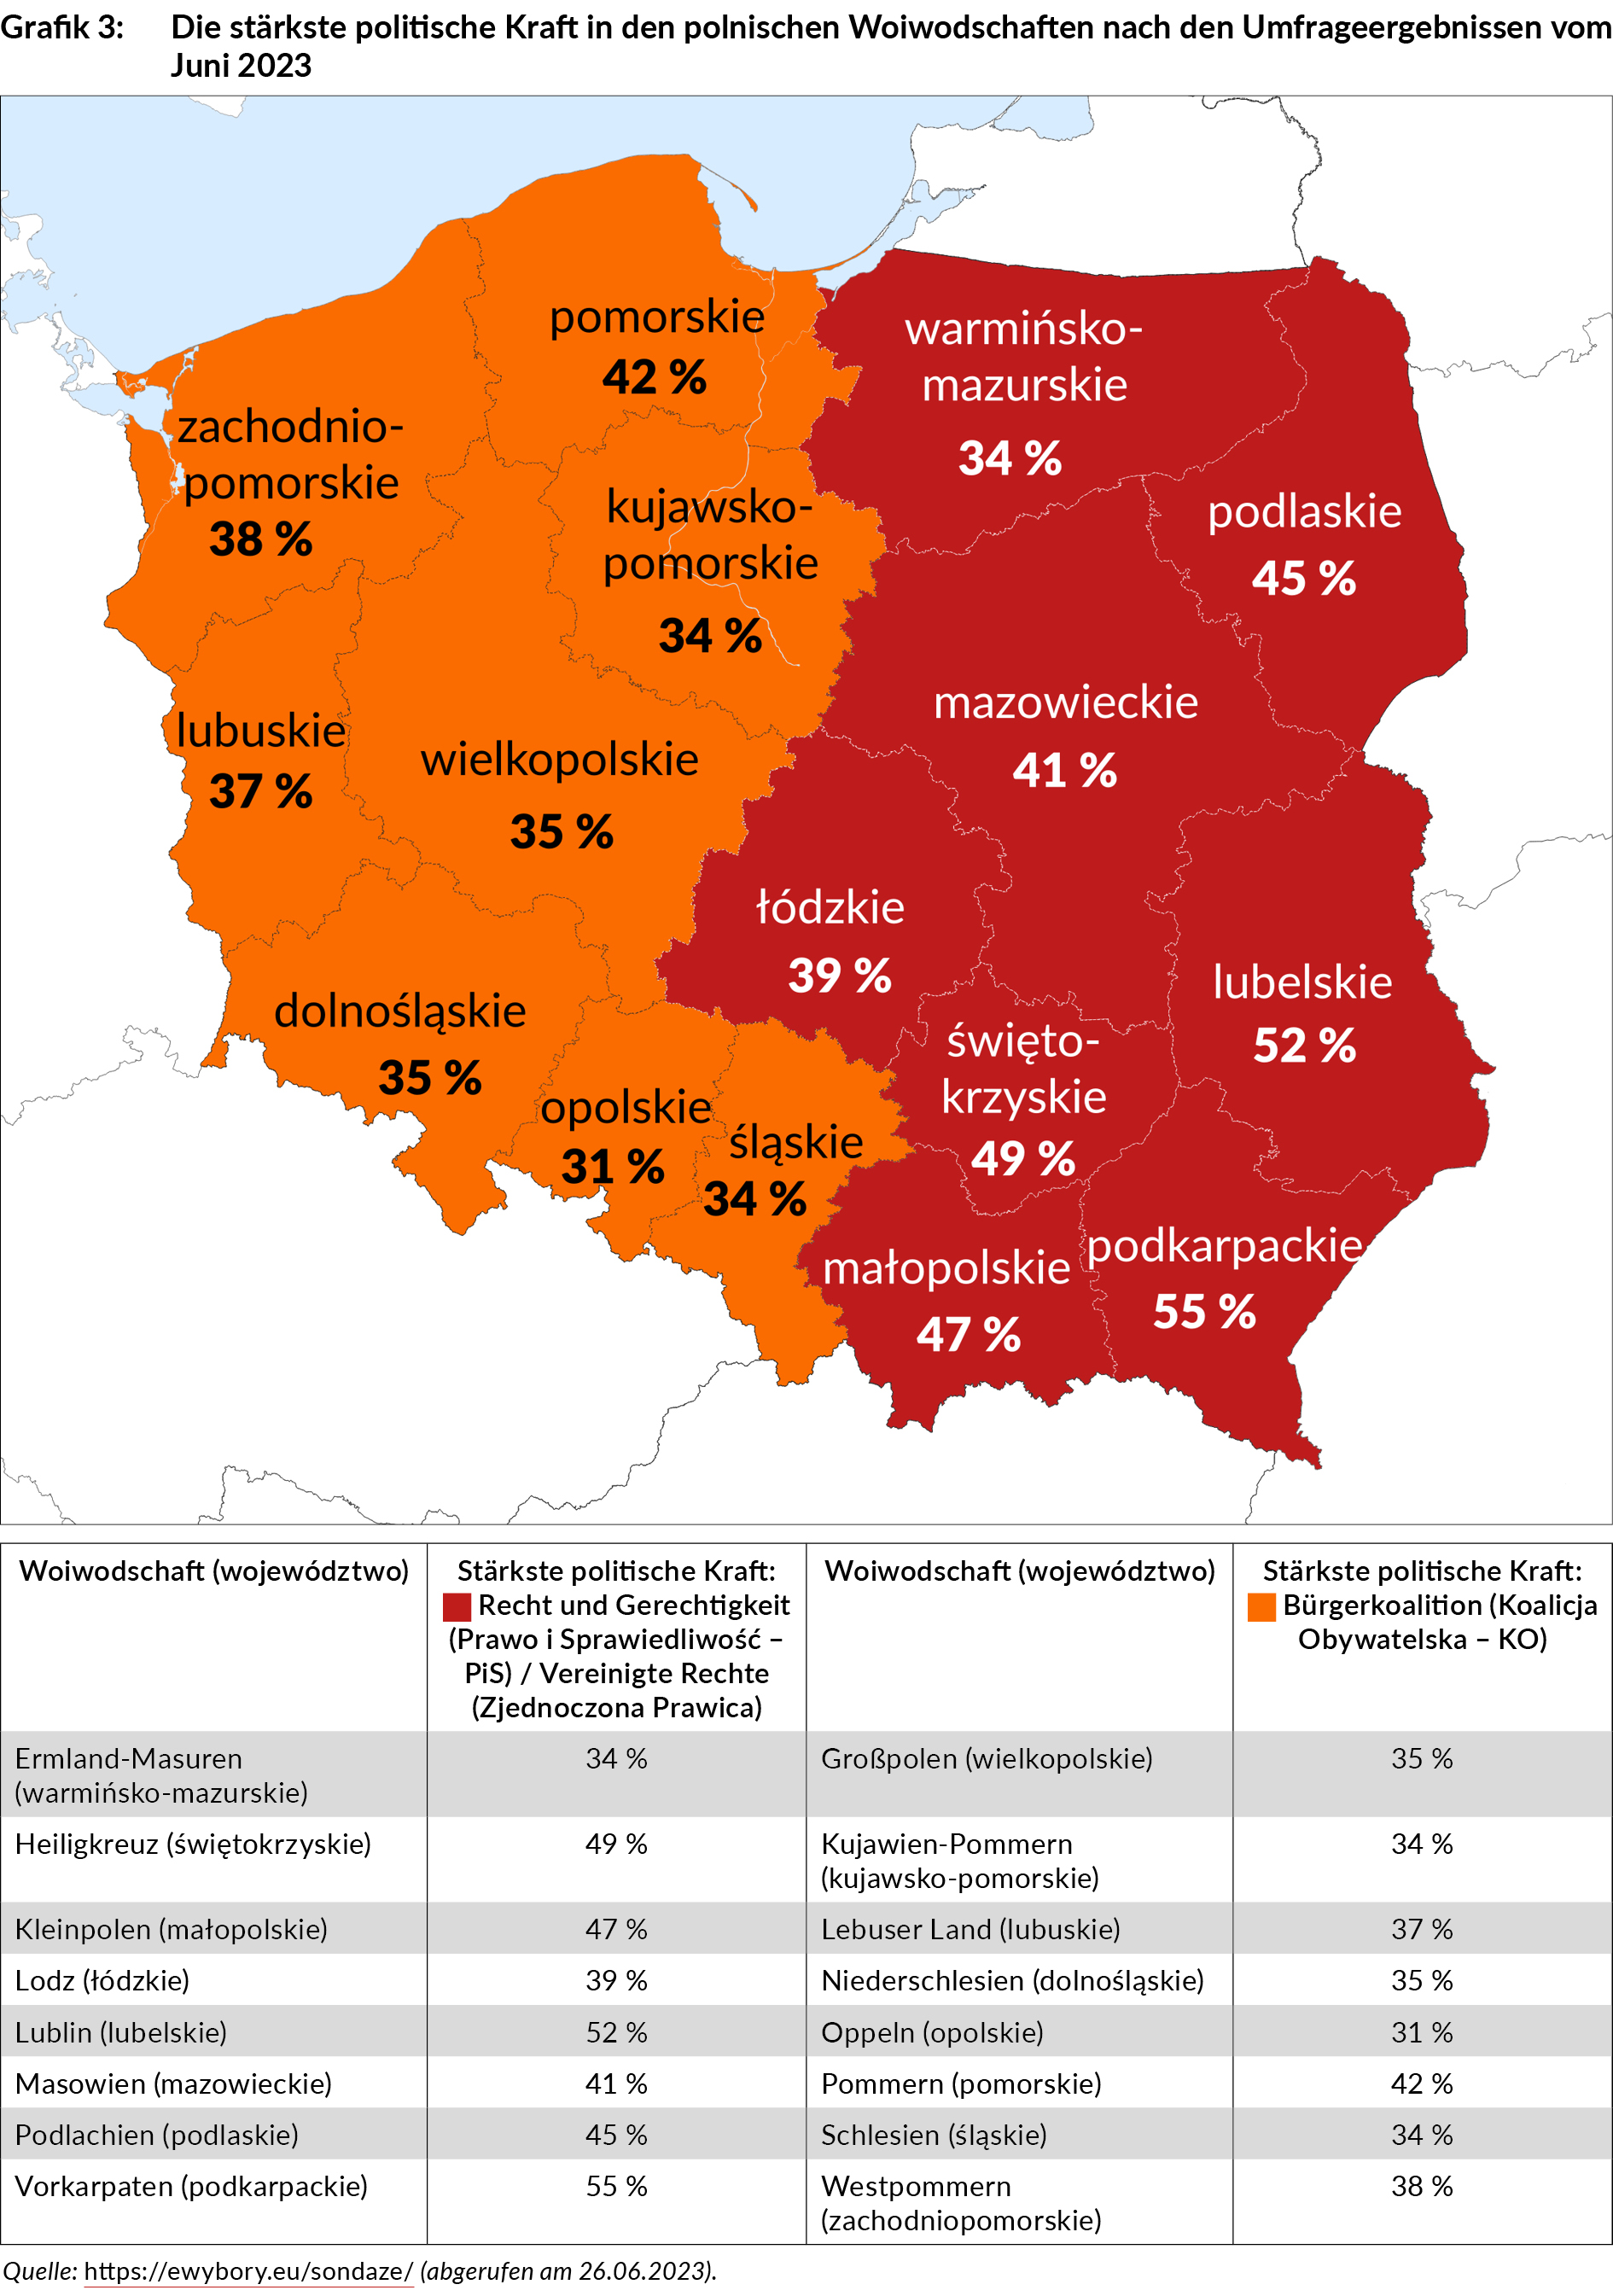 die_staerkste_politische_kraft_in_den_polnischen_woiwodschaften_nach_den_umfrageergebnissen_vom_juni_2023_grafik_pa313_3.jpg